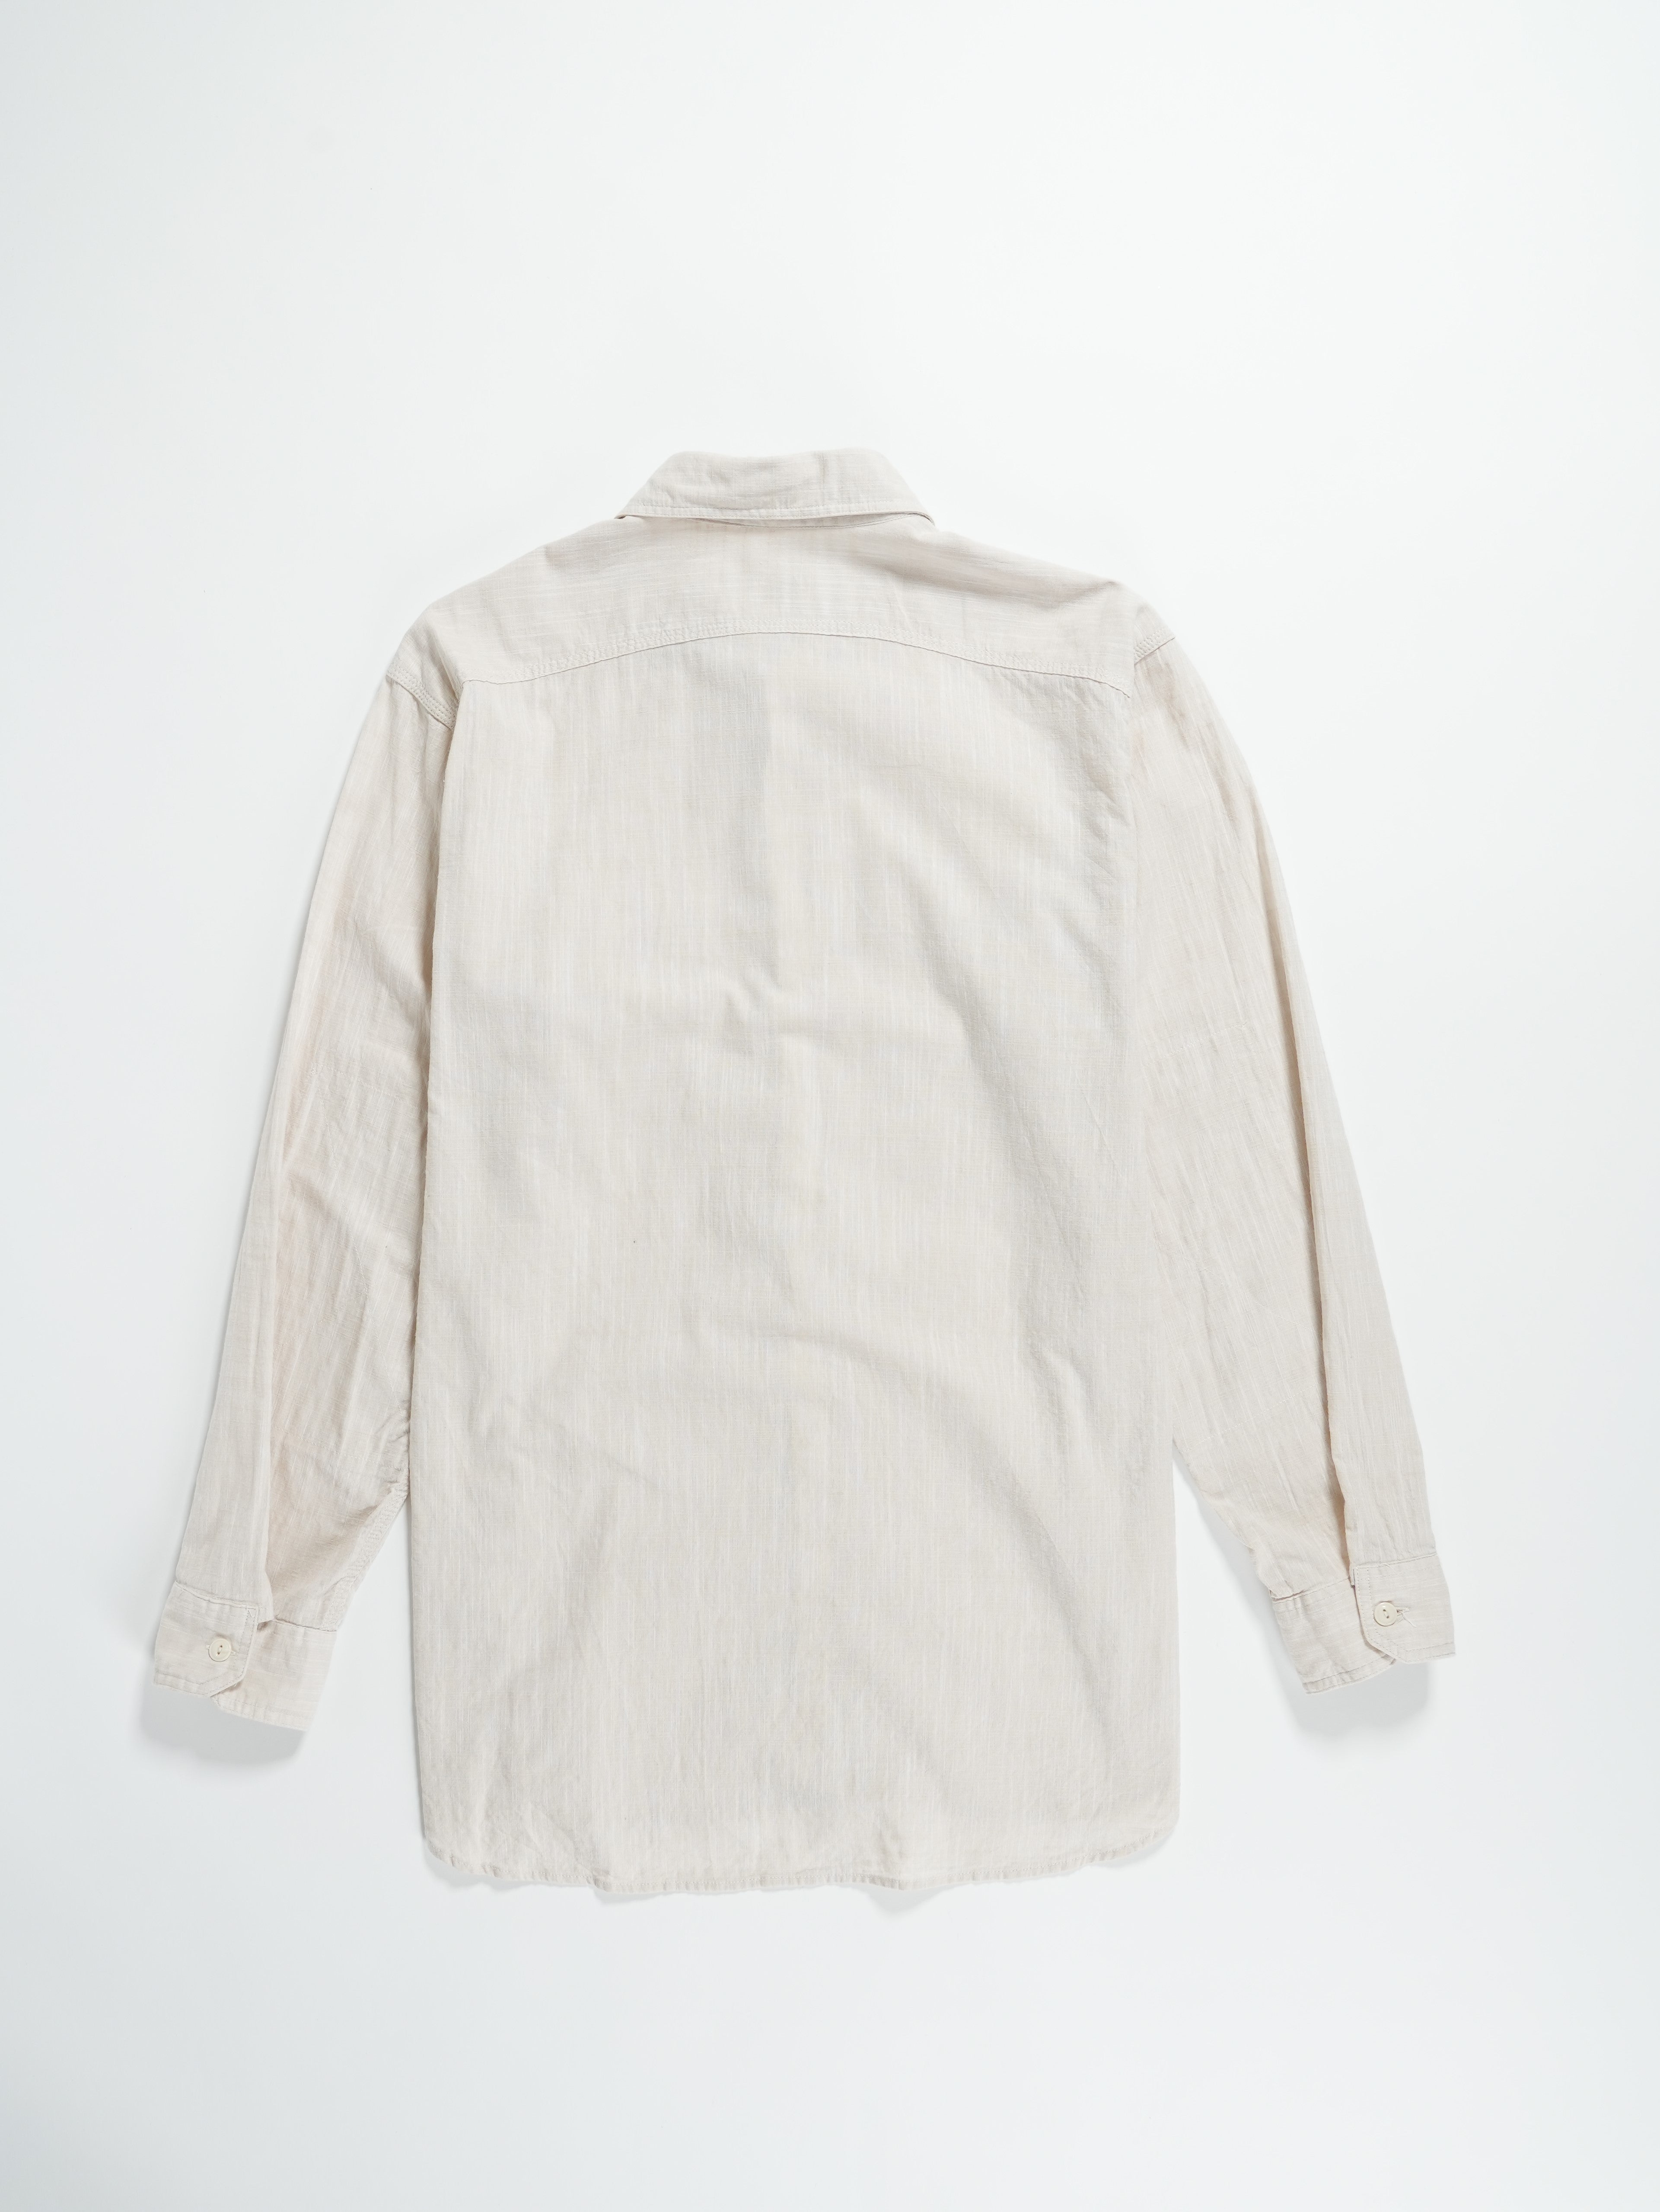 Work Shirt - Beige Cotton Slab